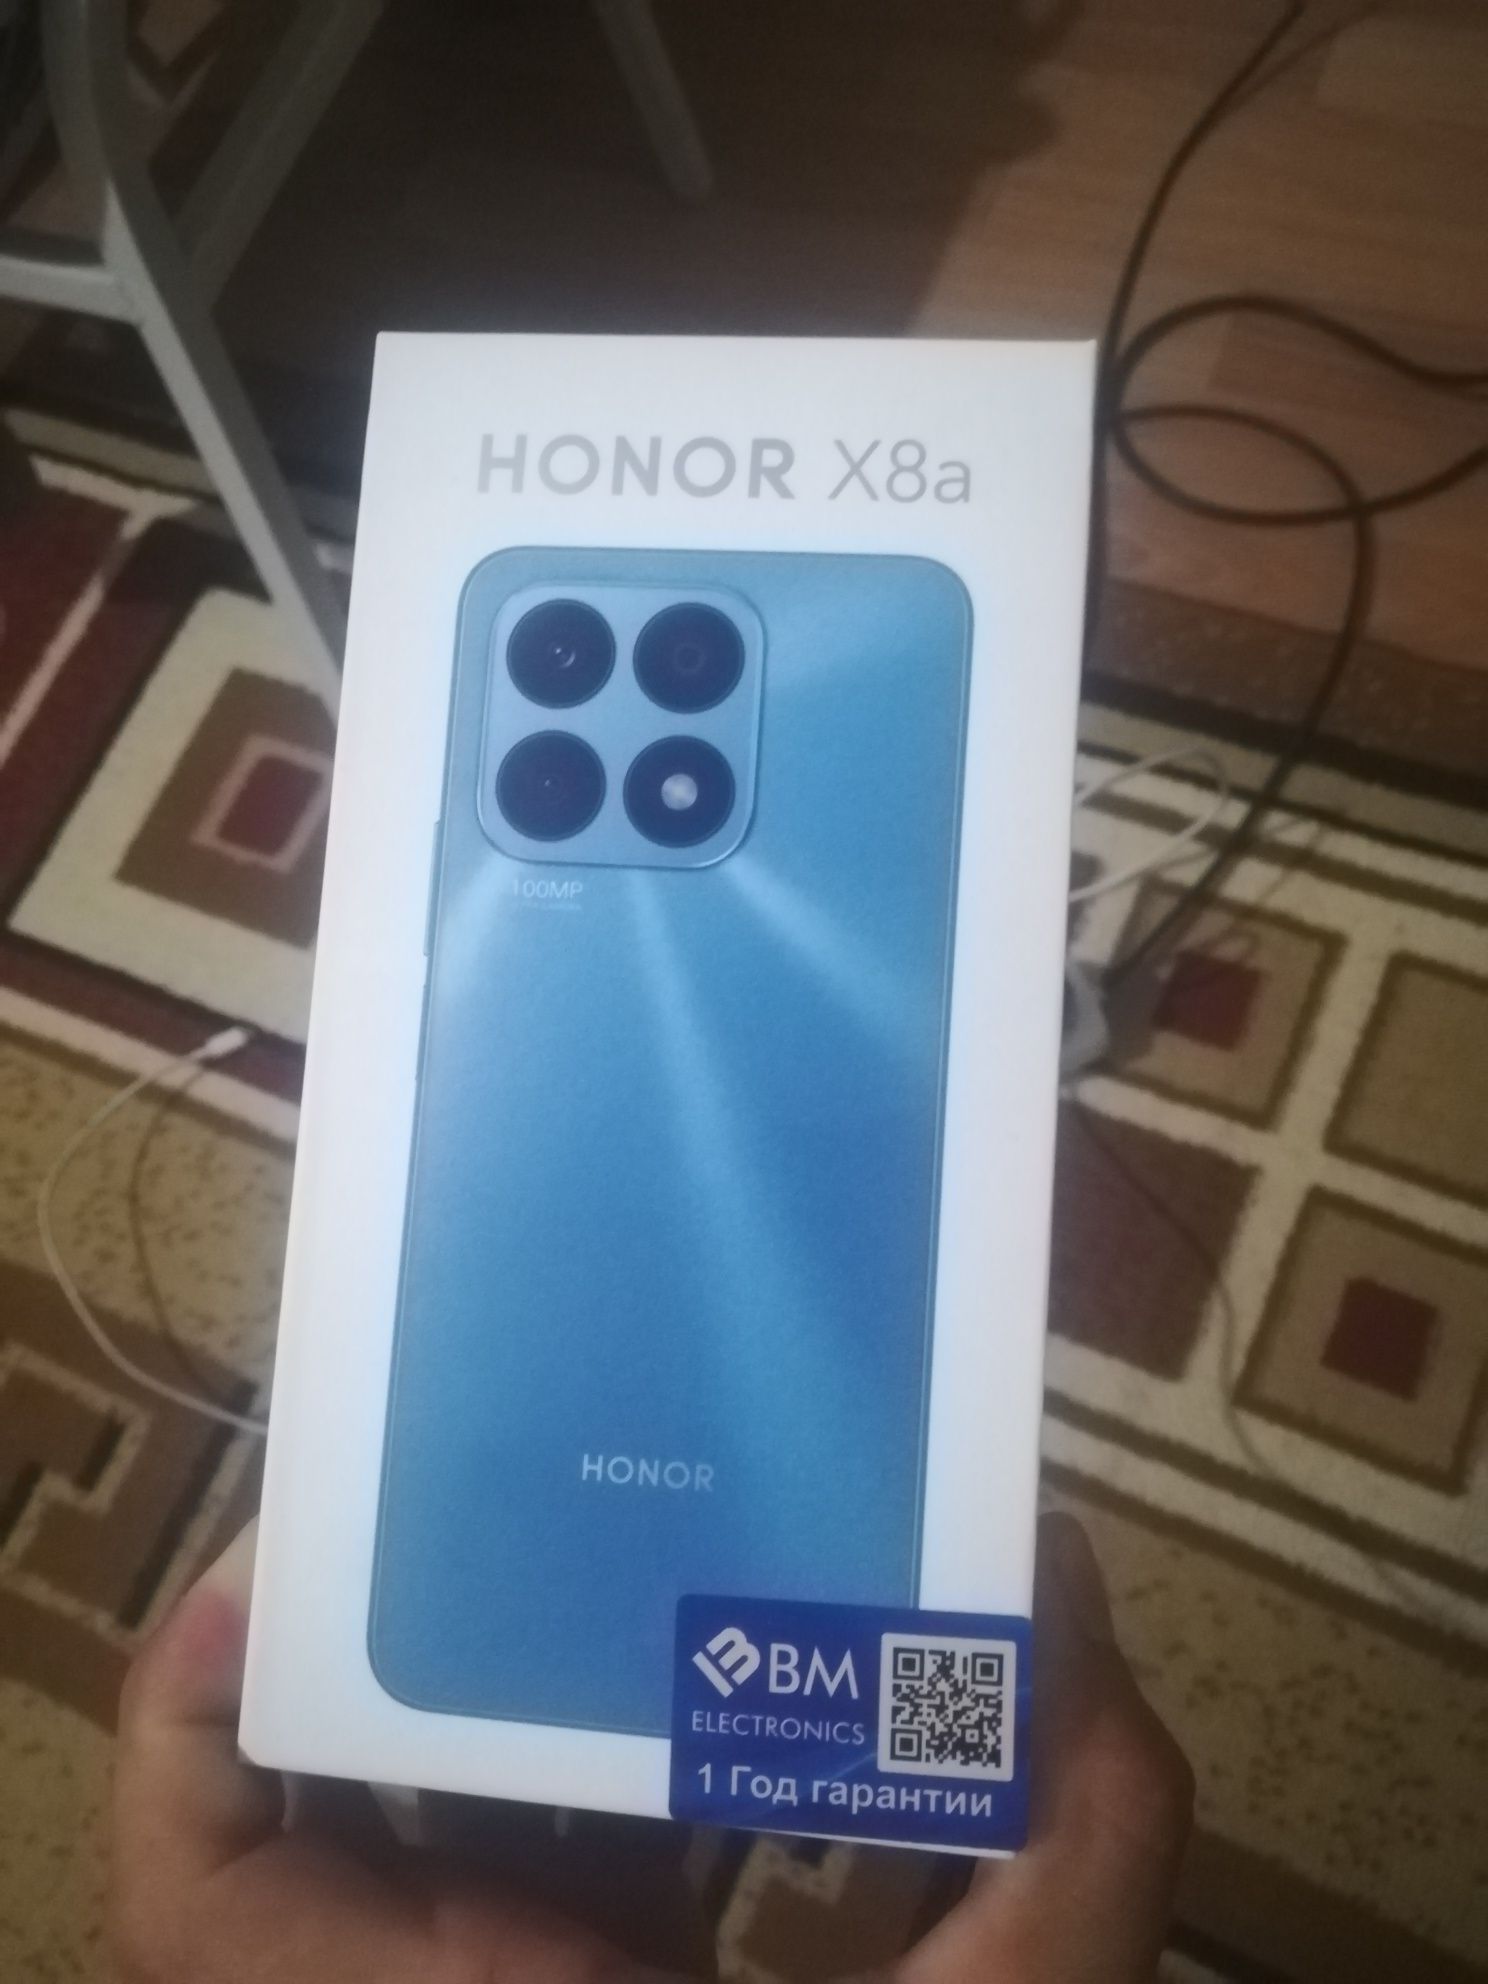 HONOR  X8a  6GB,   128 GB